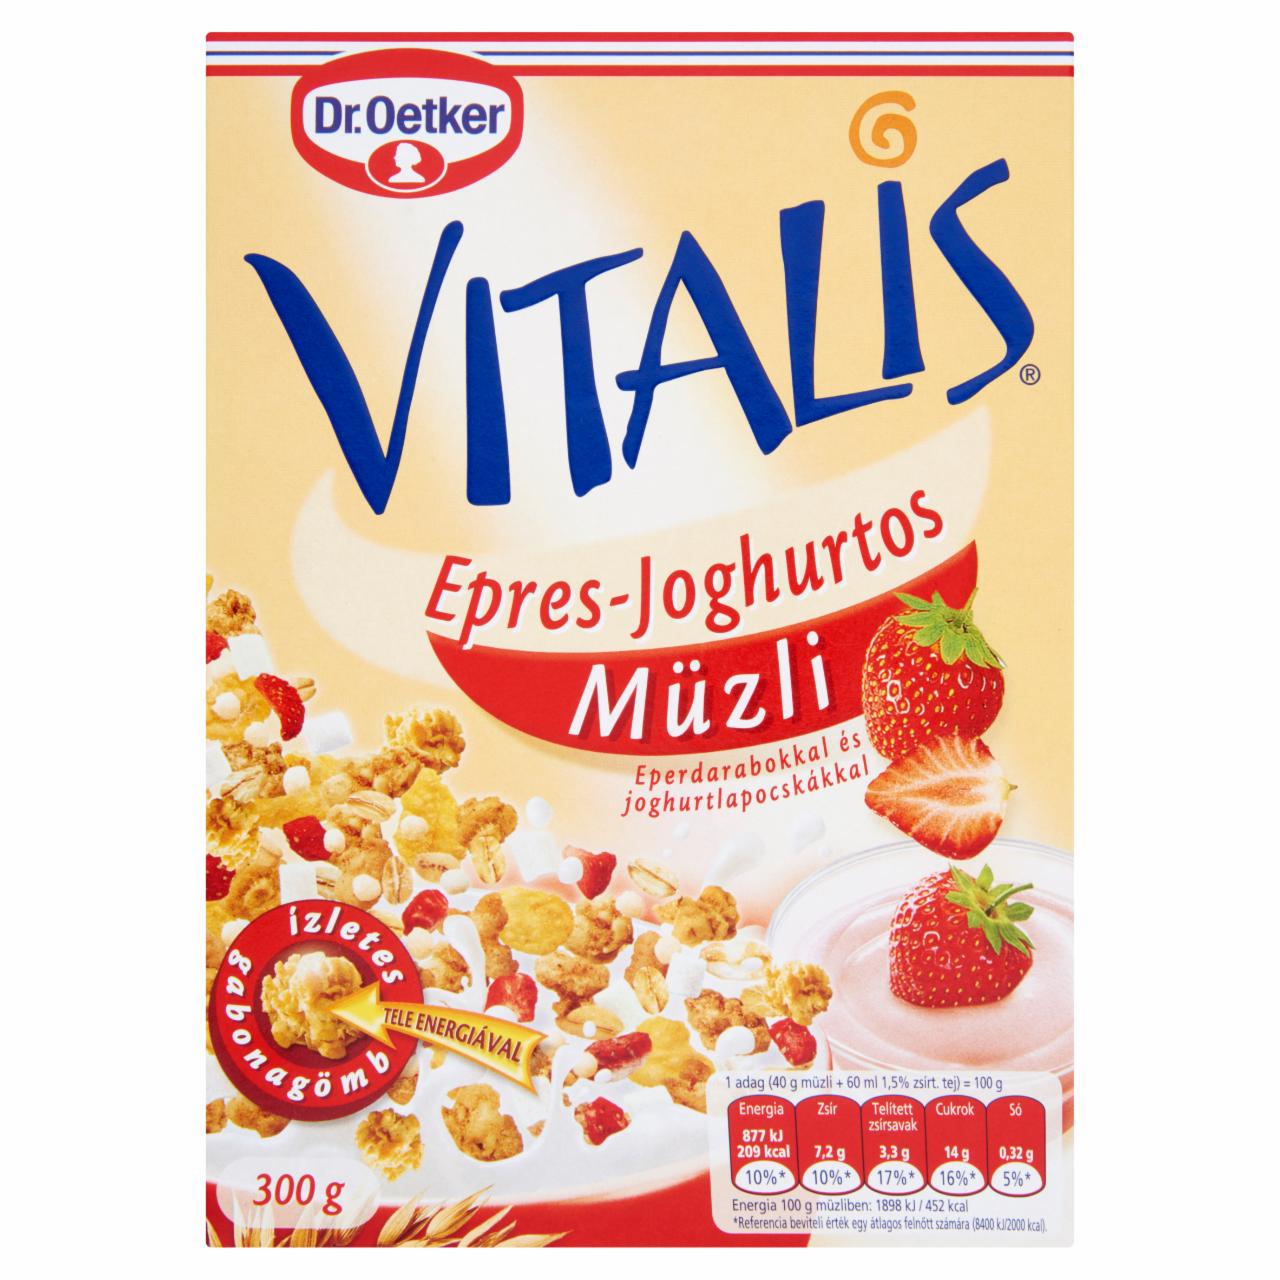 Képek - Dr. Oetker Vitalis epres-joghurtos müzli eperdarabokkal és joghurtlapocskákkal 300 g